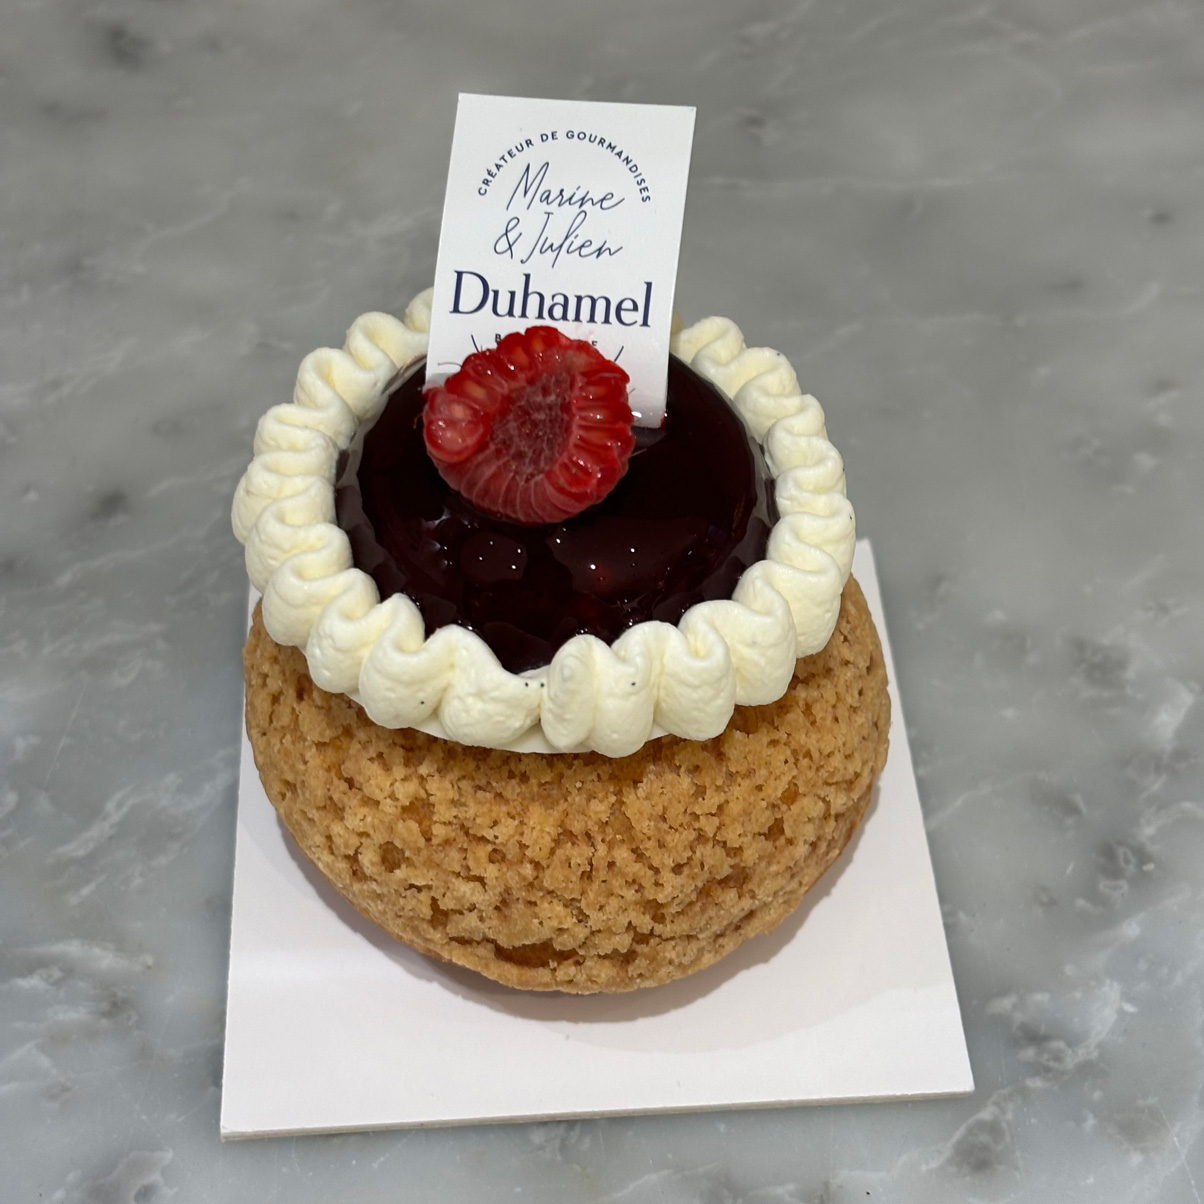 Créateur de chocolats et goûters - Boulangerie Duhamel